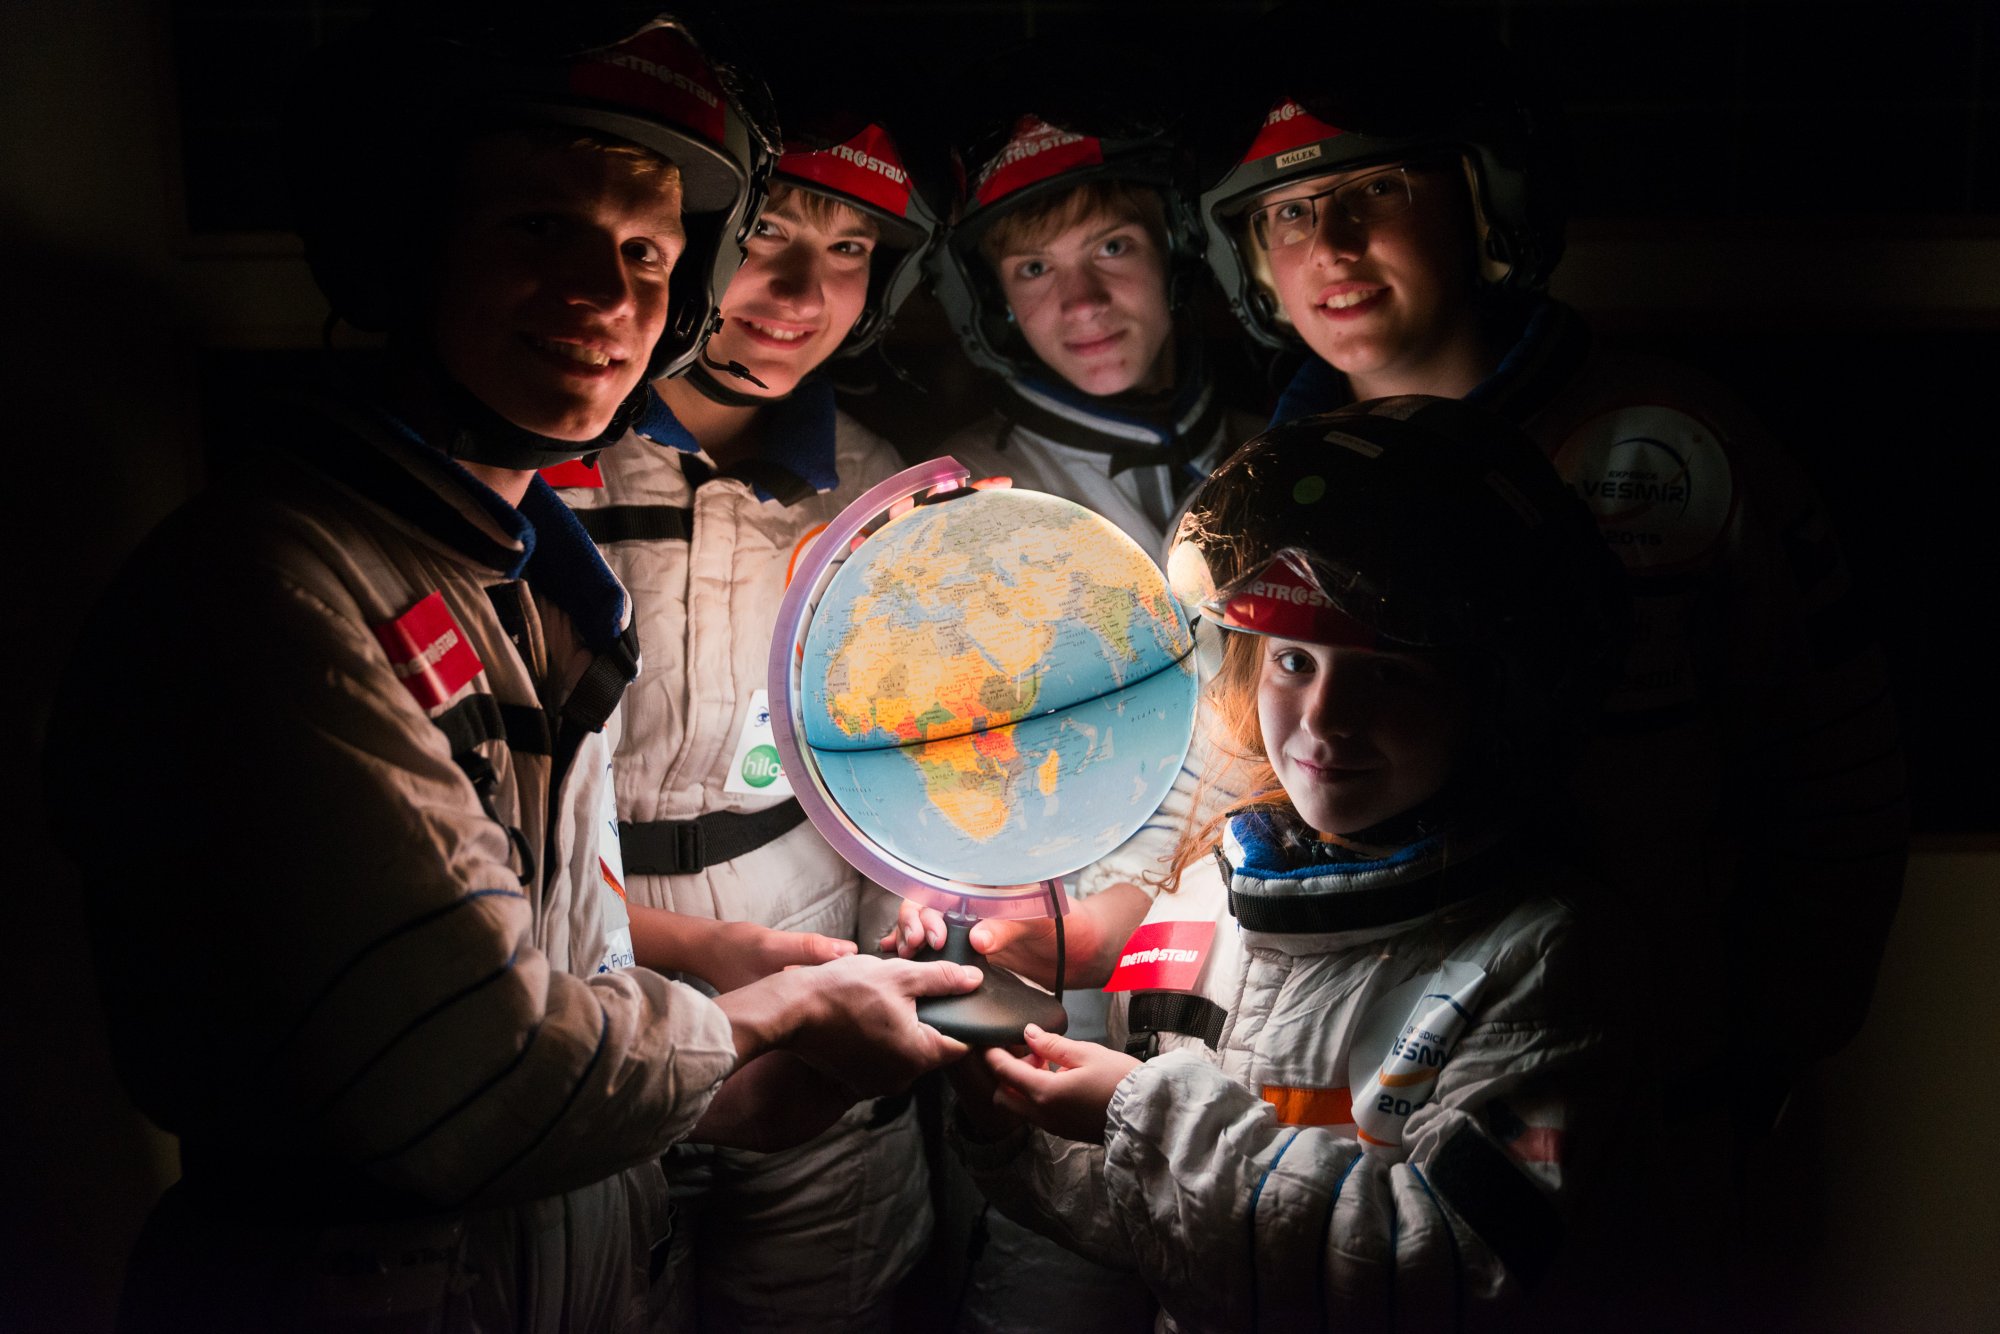 Finalisté Expedice vesmír 2015: Jakub Zemek, Ondřej Brhlík, Vojtěch Fárek, Adam Karas a Alena Kupská. (foto: Jan Rasch, Expedice vesmír)